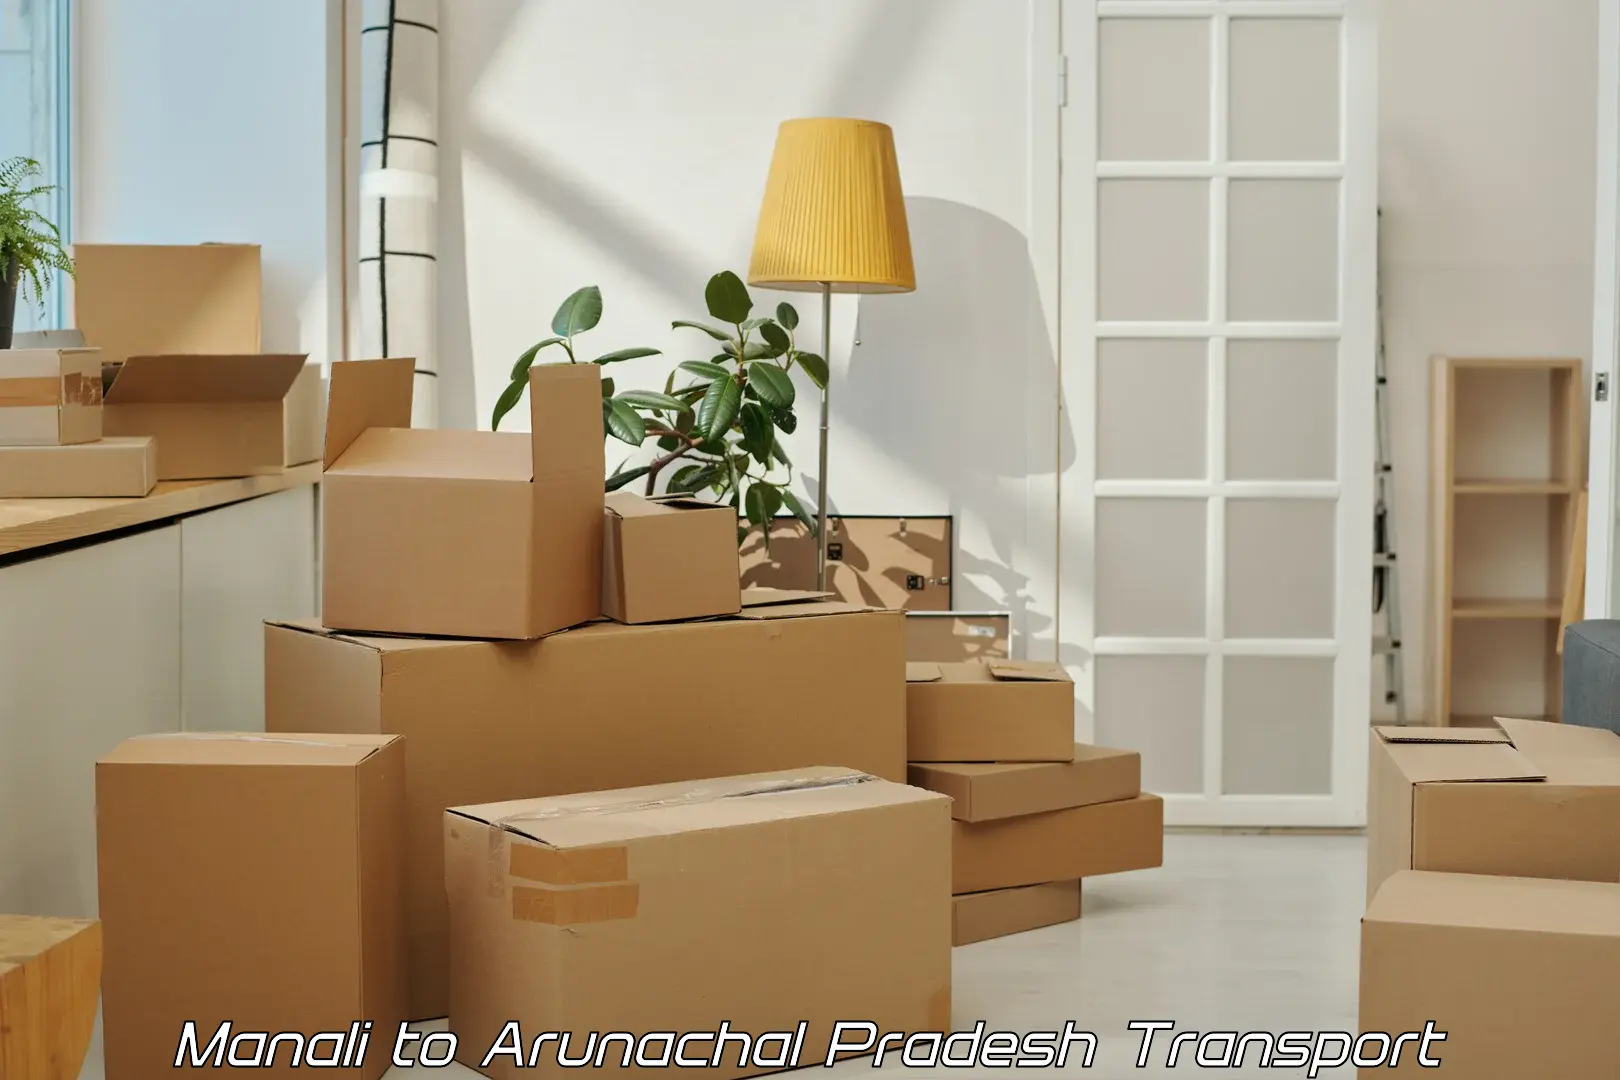 Furniture transport service Manali to Arunachal Pradesh